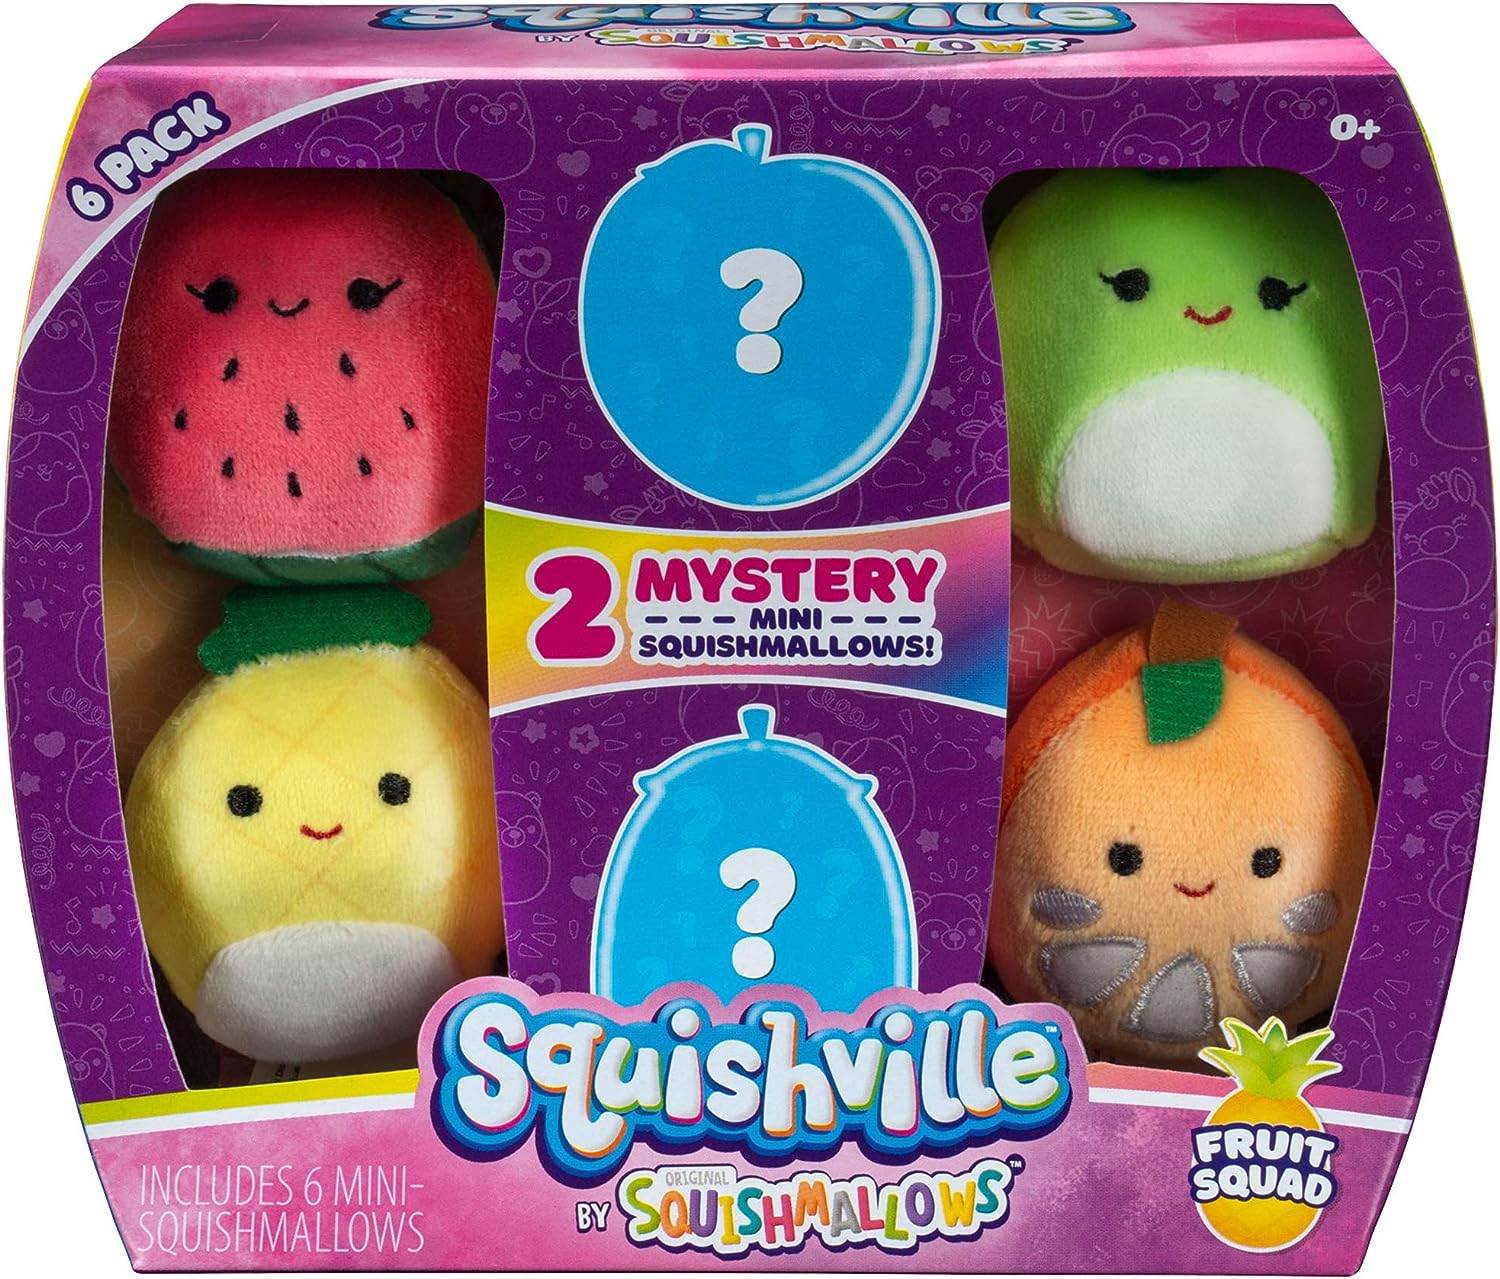 Mini-squishmallow 6 Pack Fruit Squad